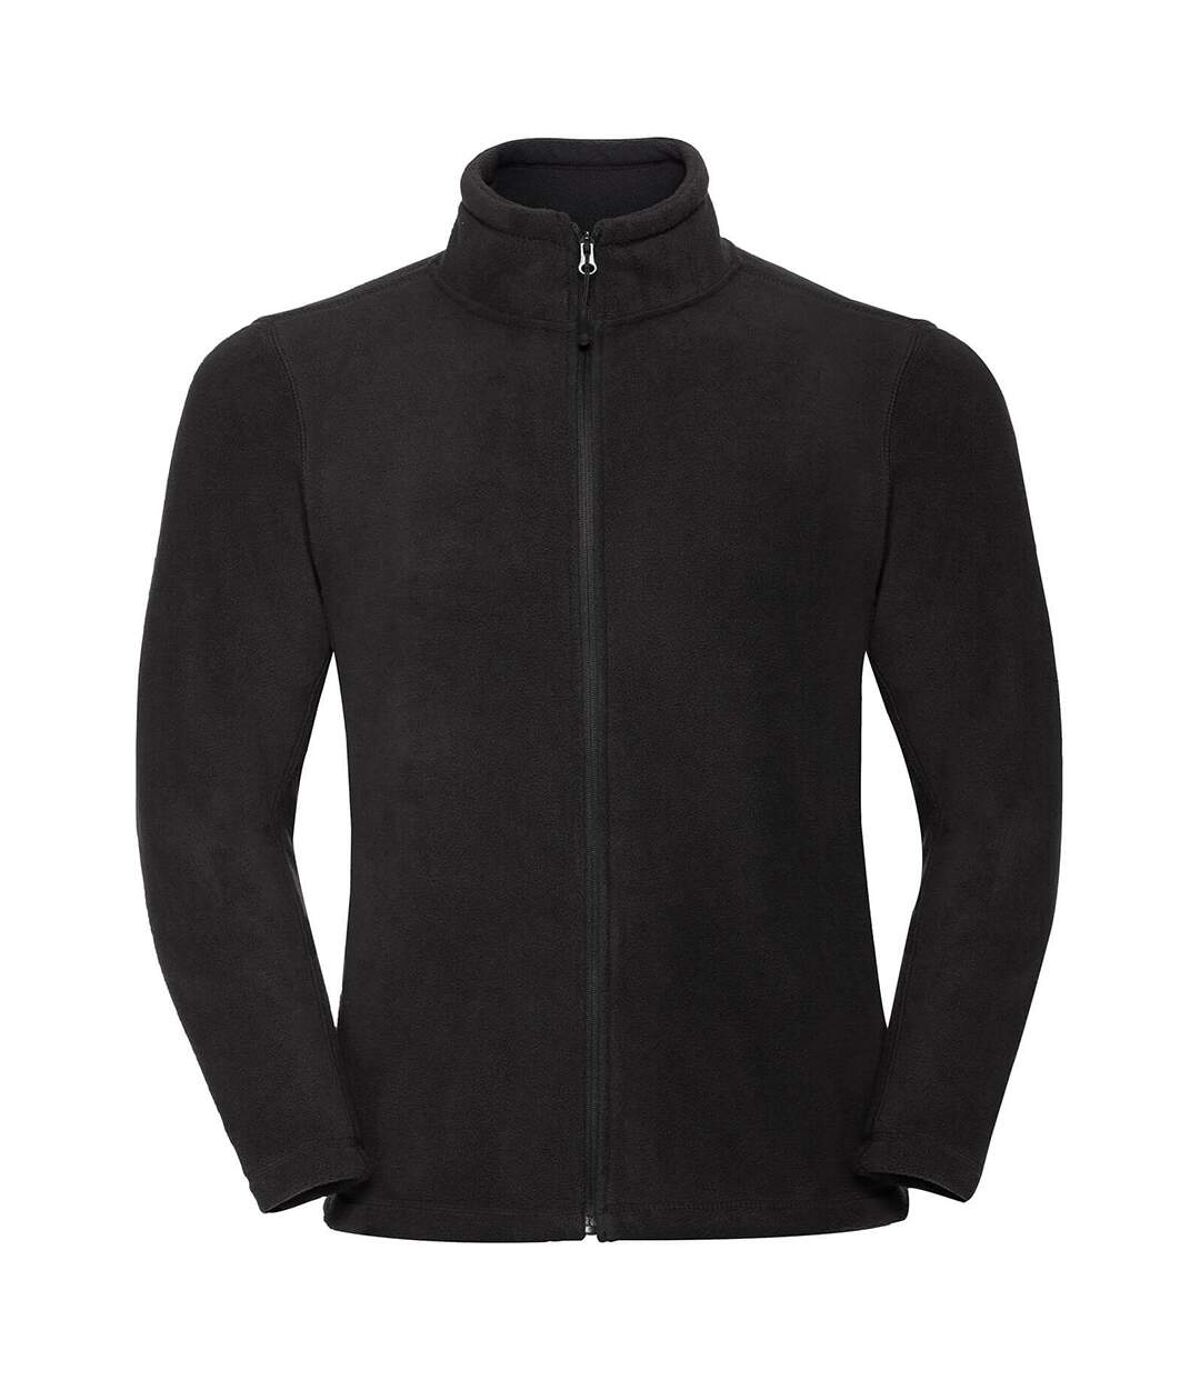 Russell Mens Full Zip Outdoor Fleece Jacket (Black) - UTBC575